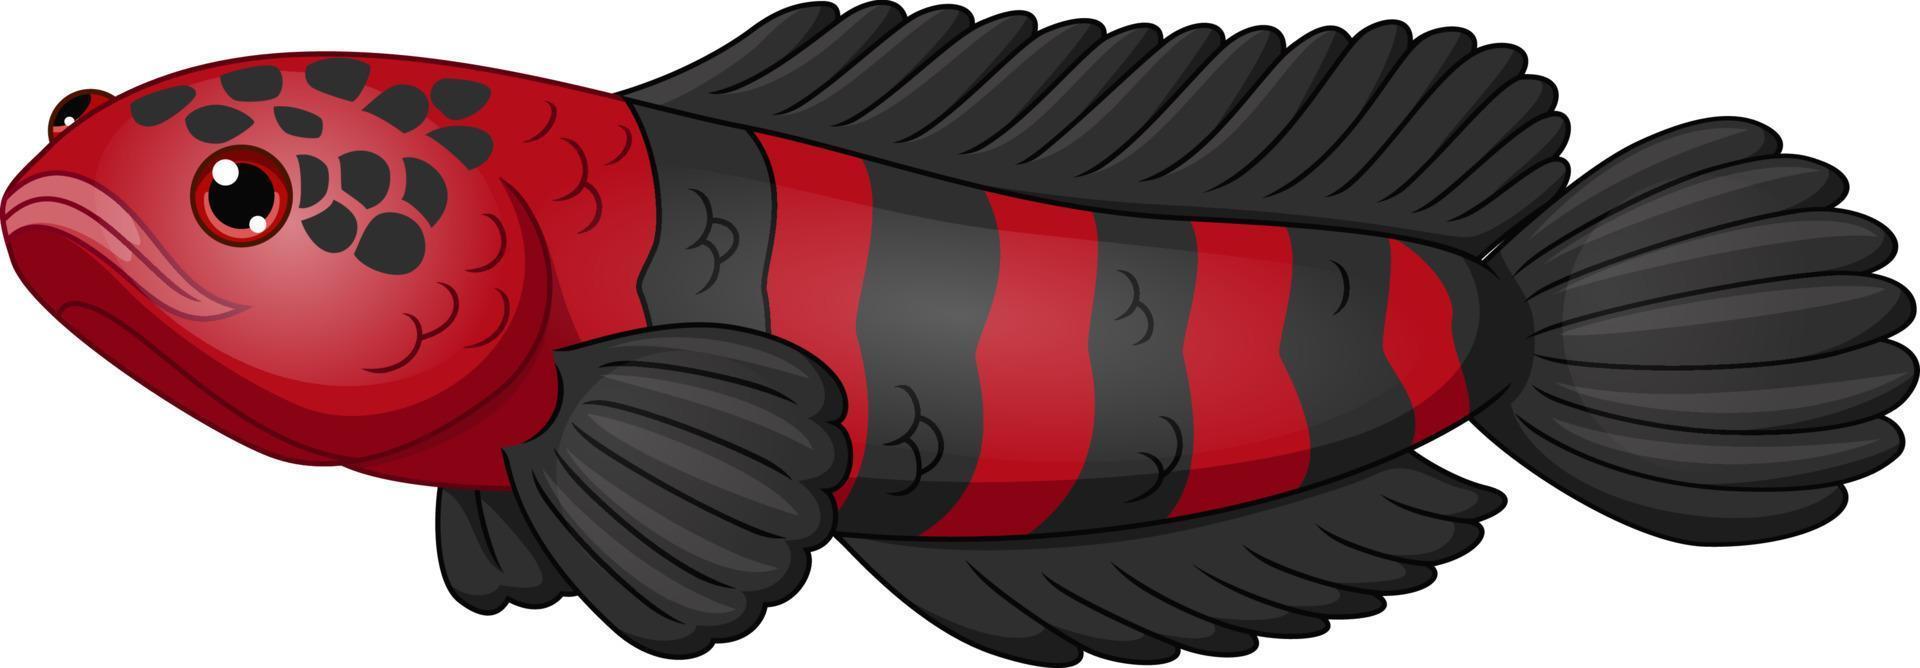 Cartoon roter und schwarzer Fisch Channa vektor